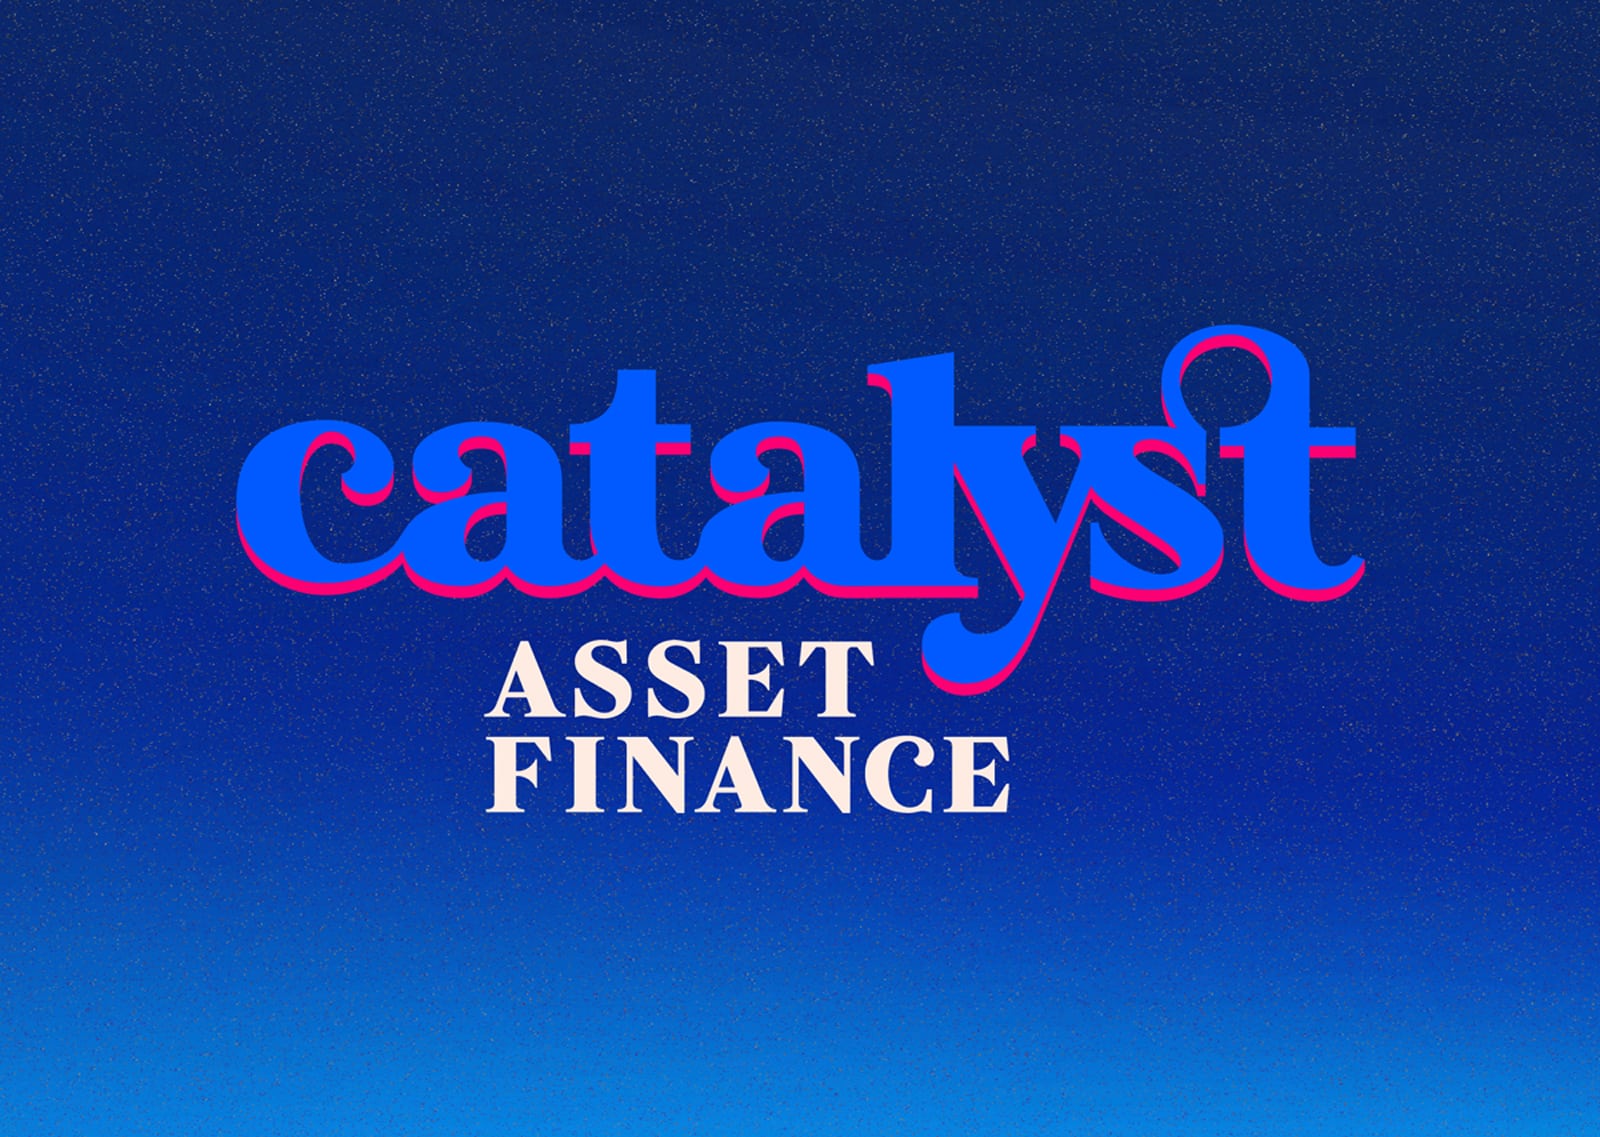 Catalyst Asset Finance